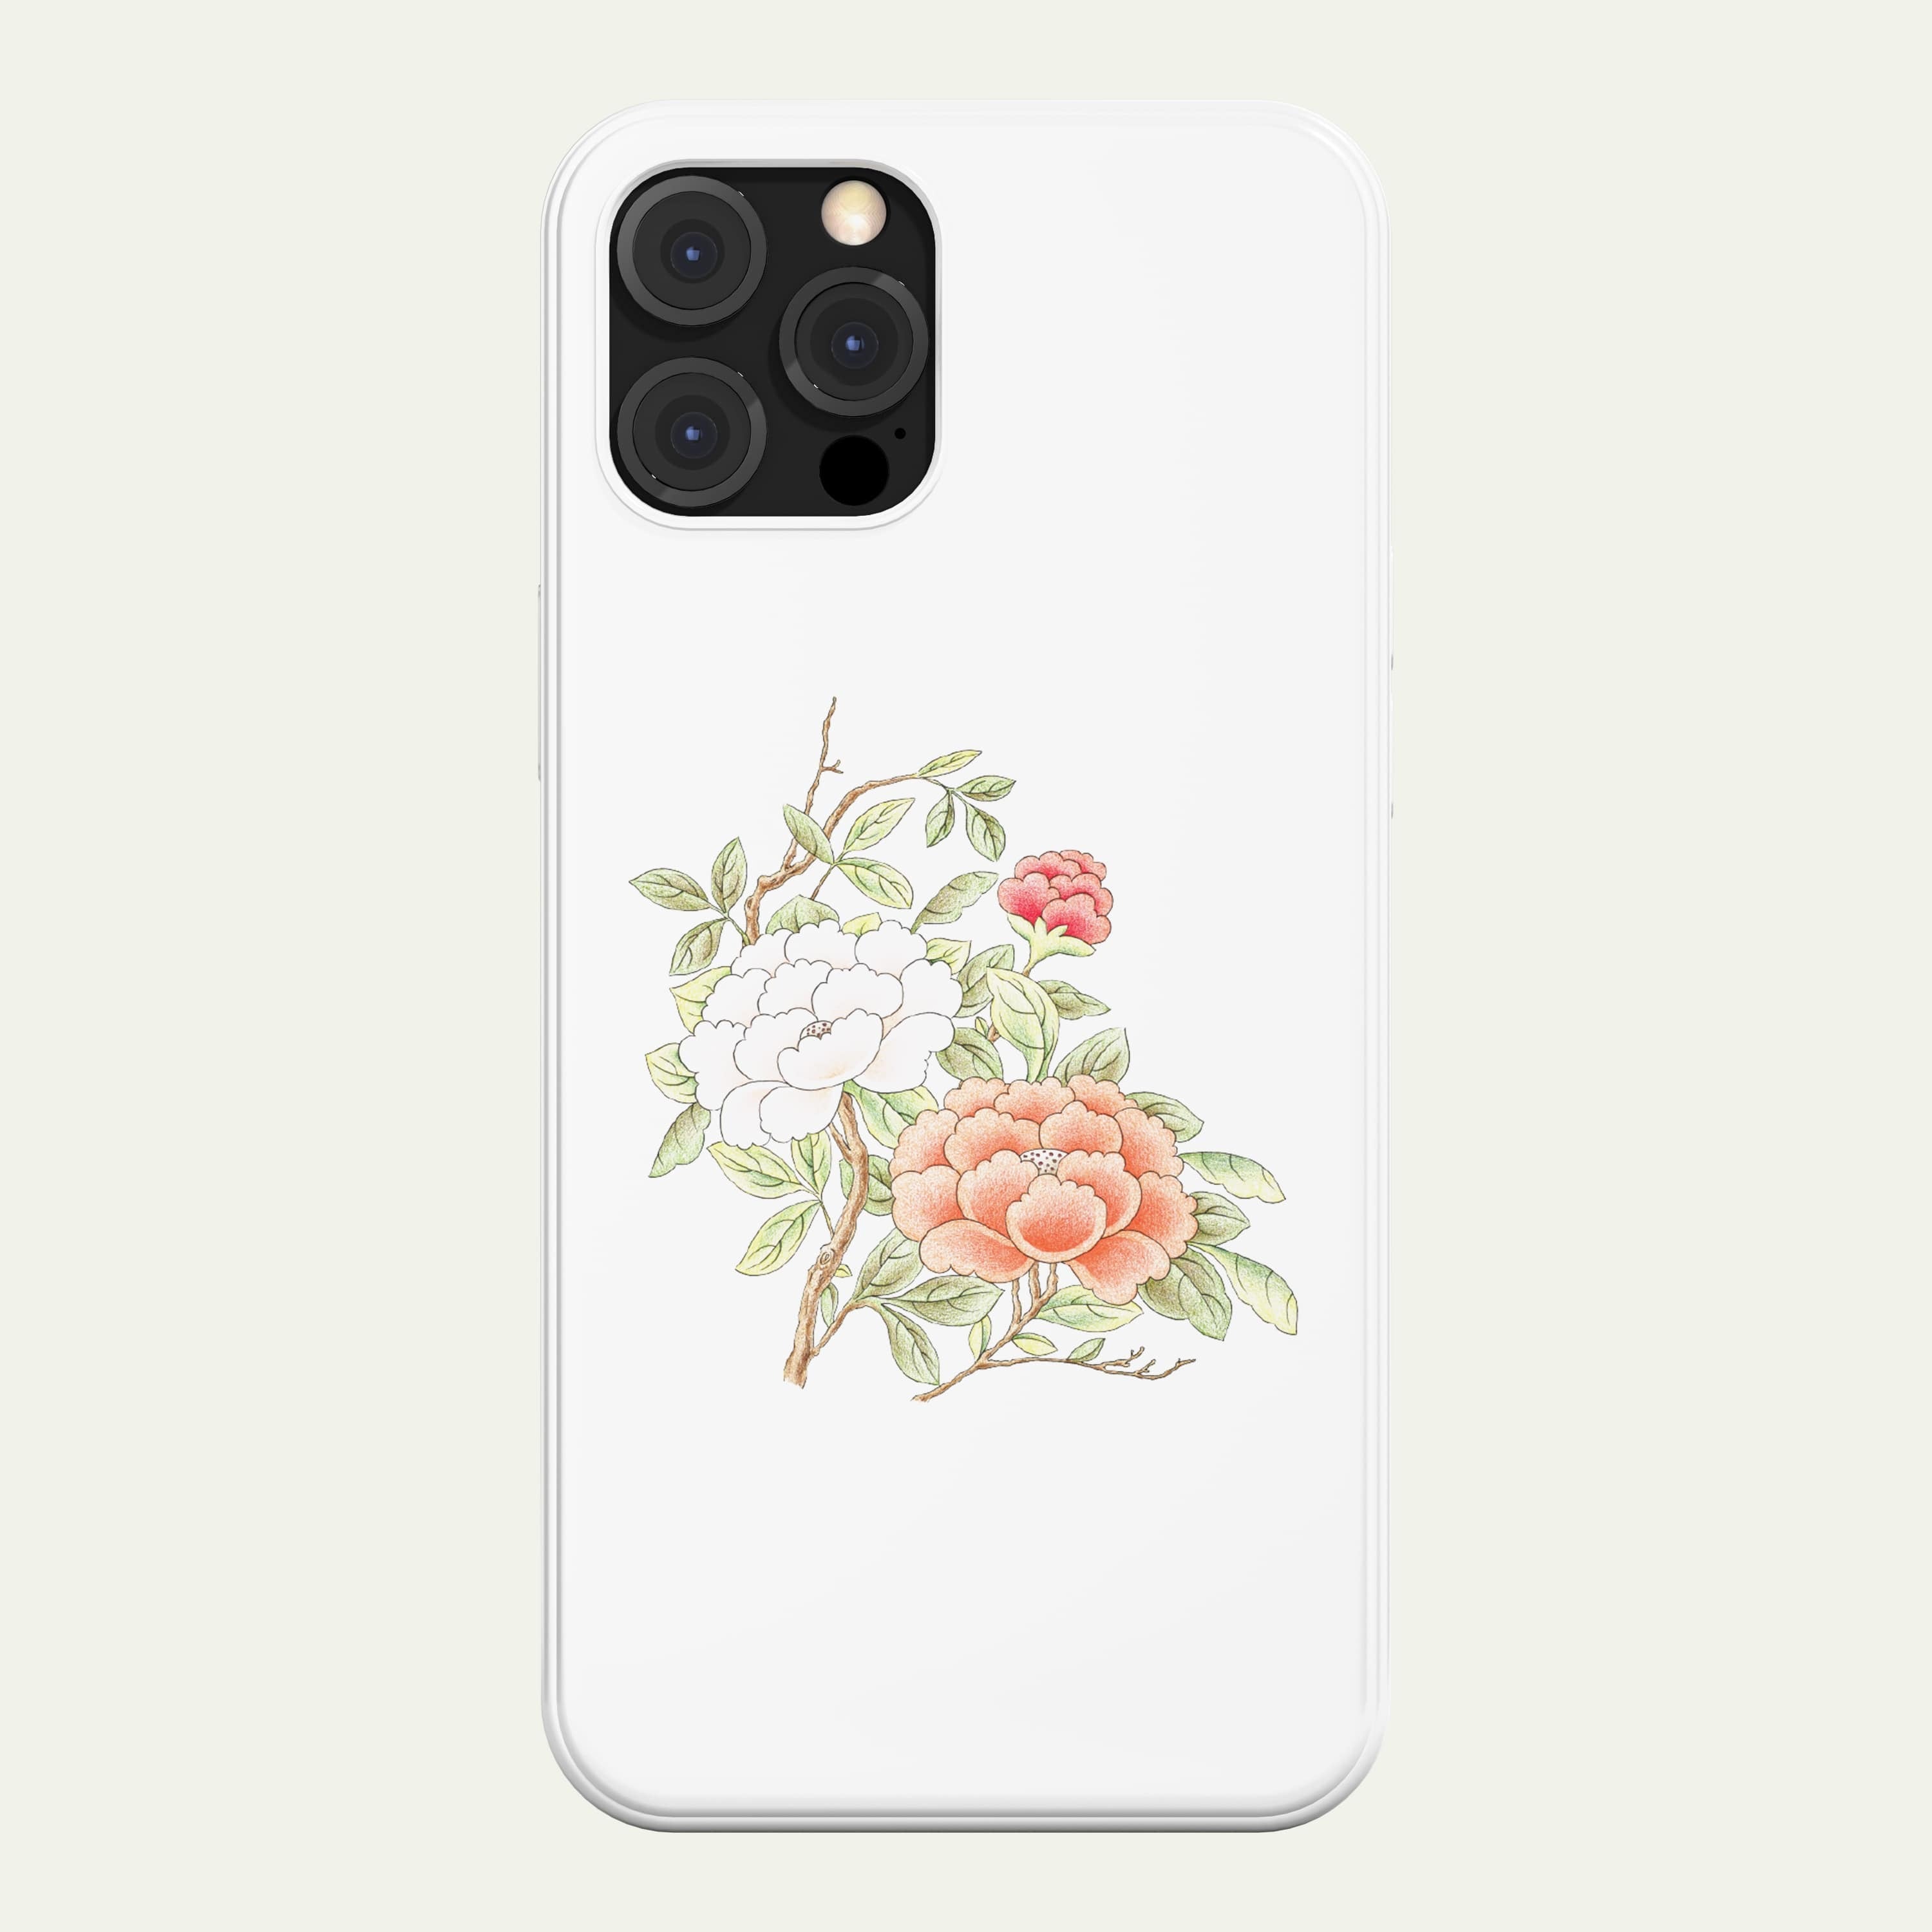 韓国 スマホケース [coloringMe] 伝統芸術 幸福 アート デザイナーズ iPhone Android 携帯カバー  牡丹Ⅰ (CL07) アイフォン ギャラクシー Galaxy